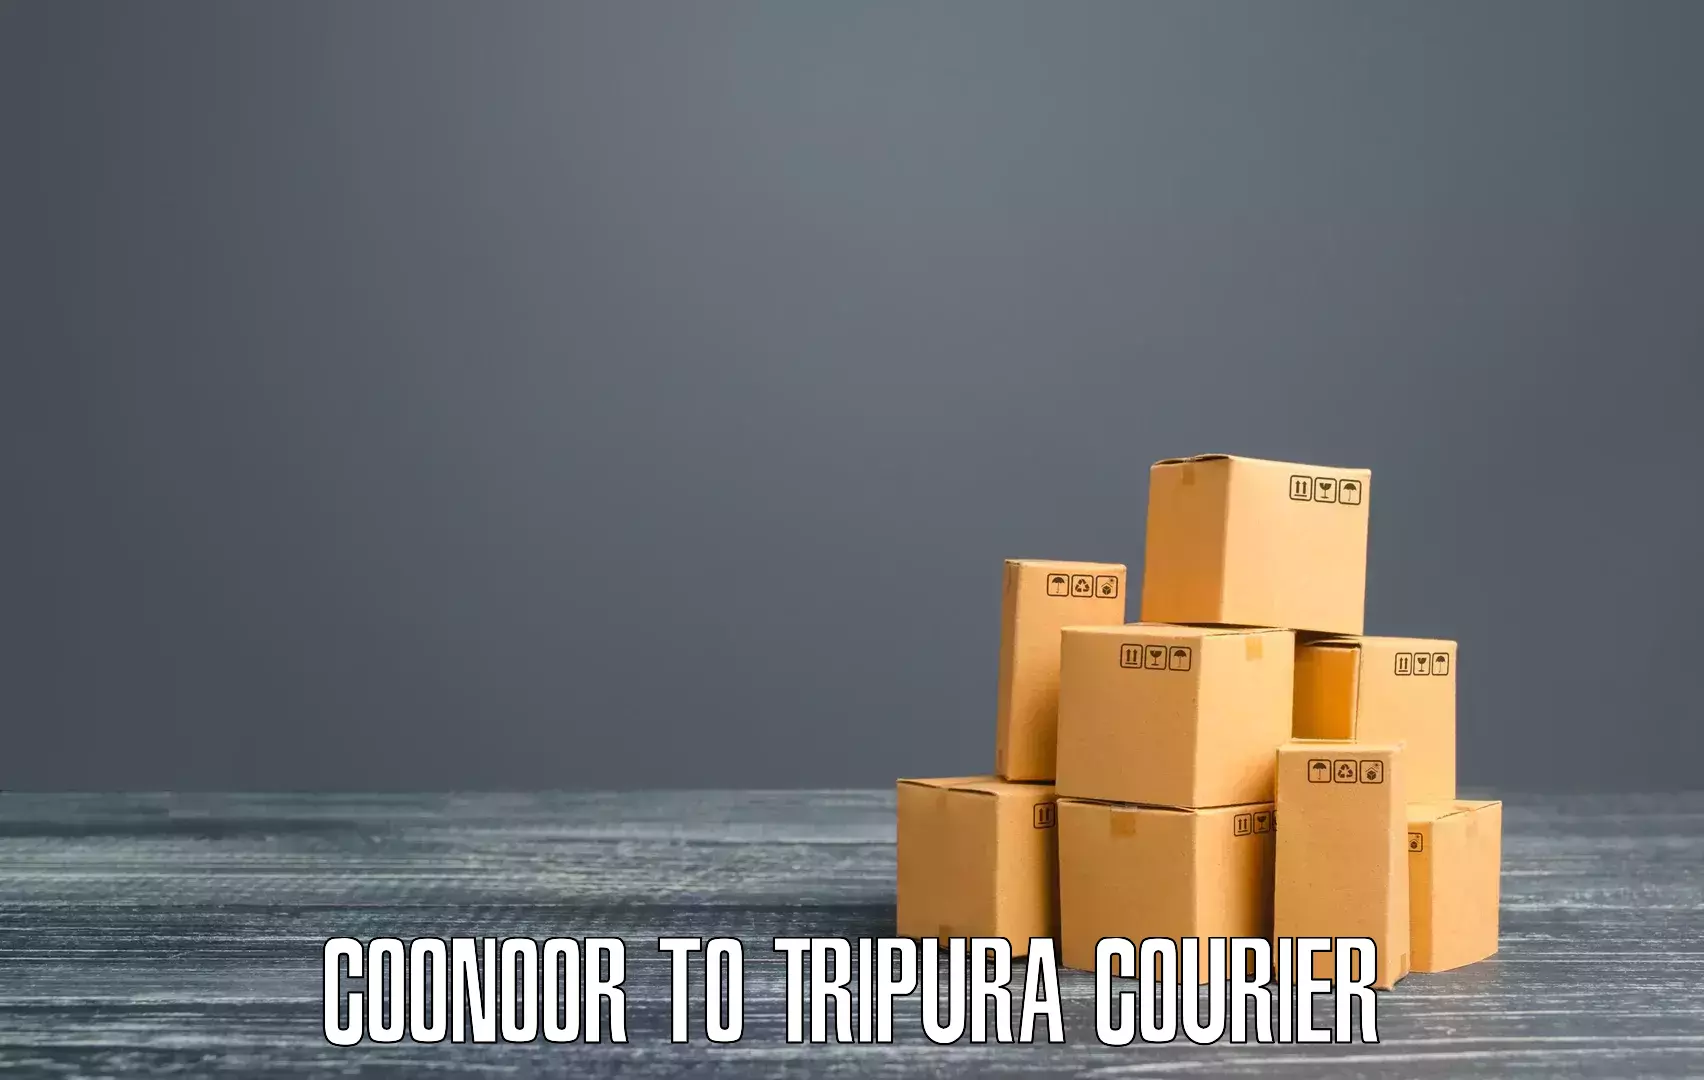 Bulk courier orders in Coonoor to IIIT Agartala